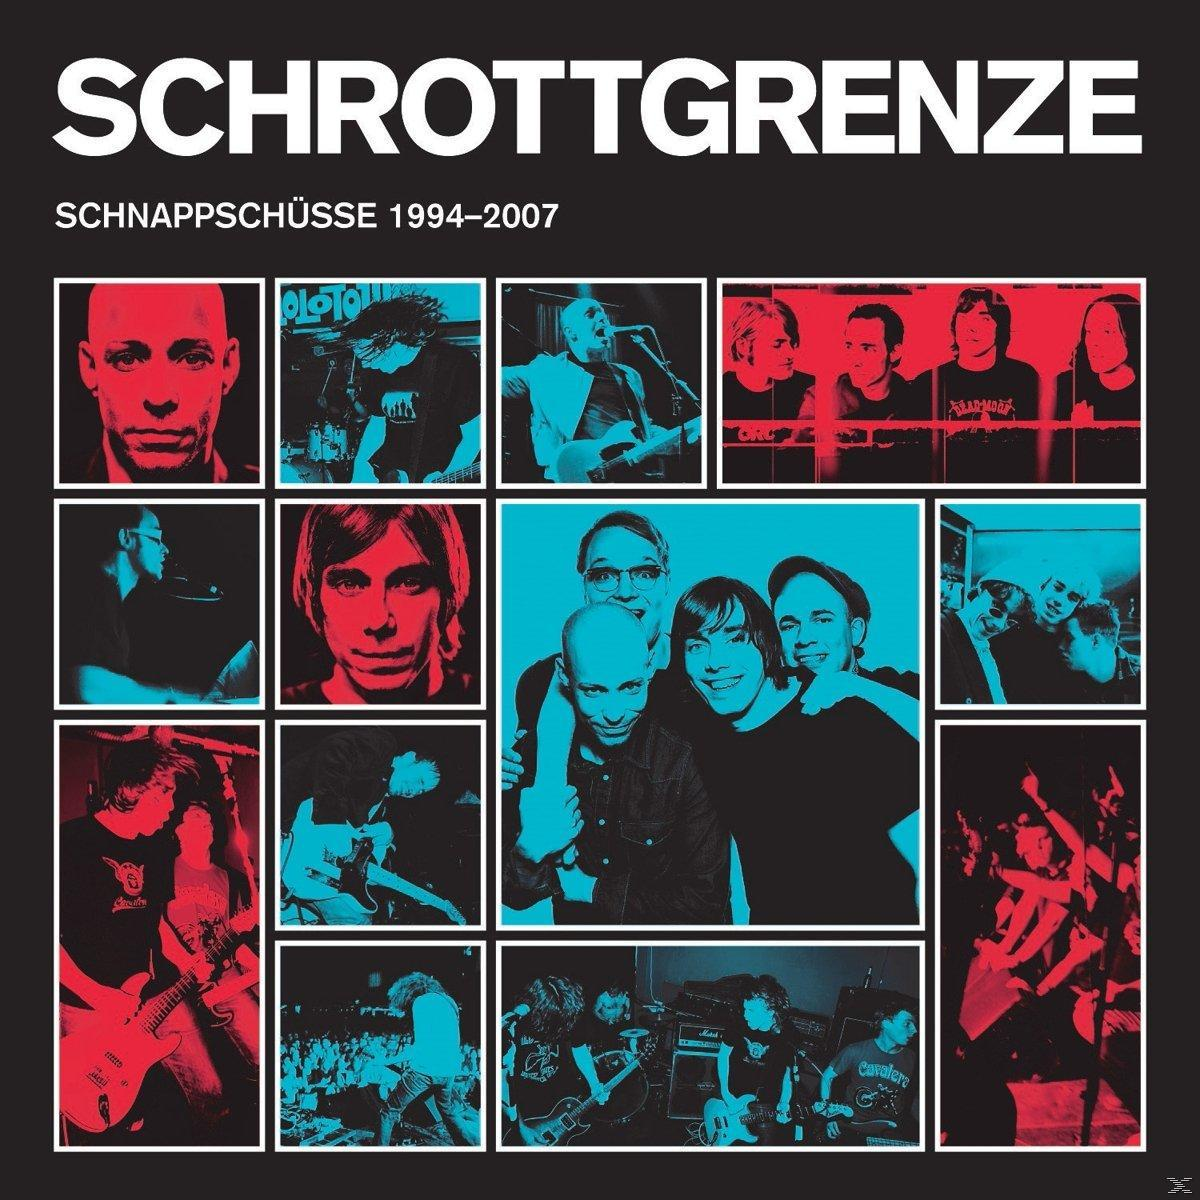 (Vinyl) - 1994-2007 Schnappschüsse - Schrottgrenze